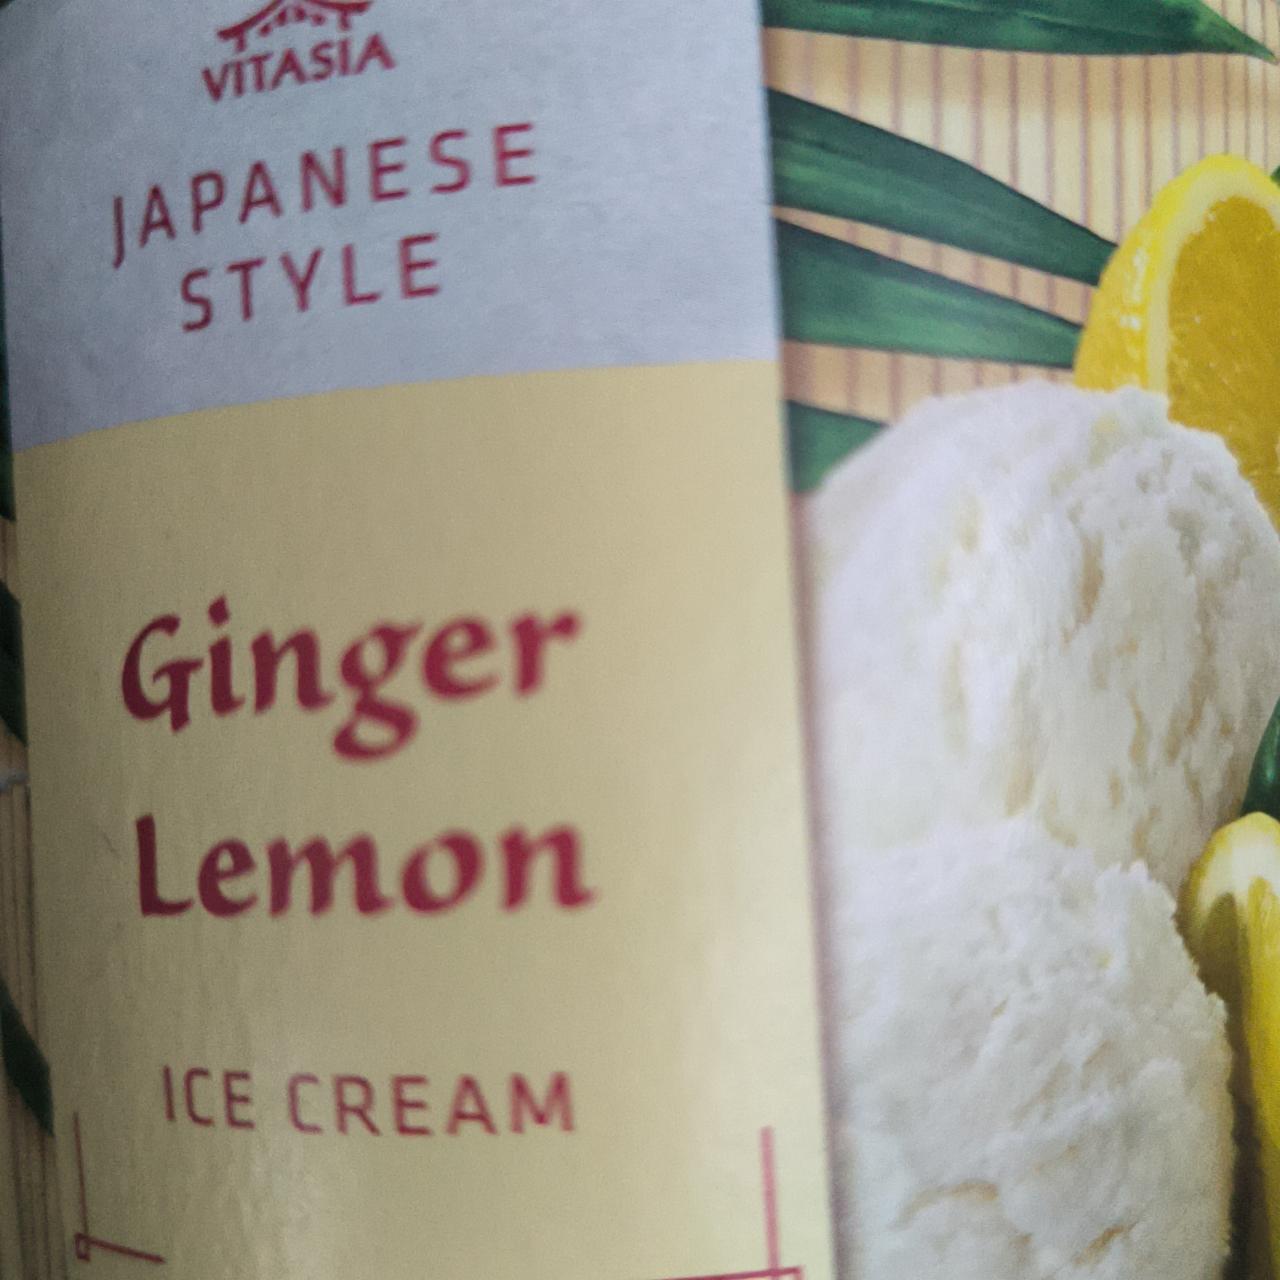 Fotografie - Japanese style Ginger Lemon ice cream Vitasia